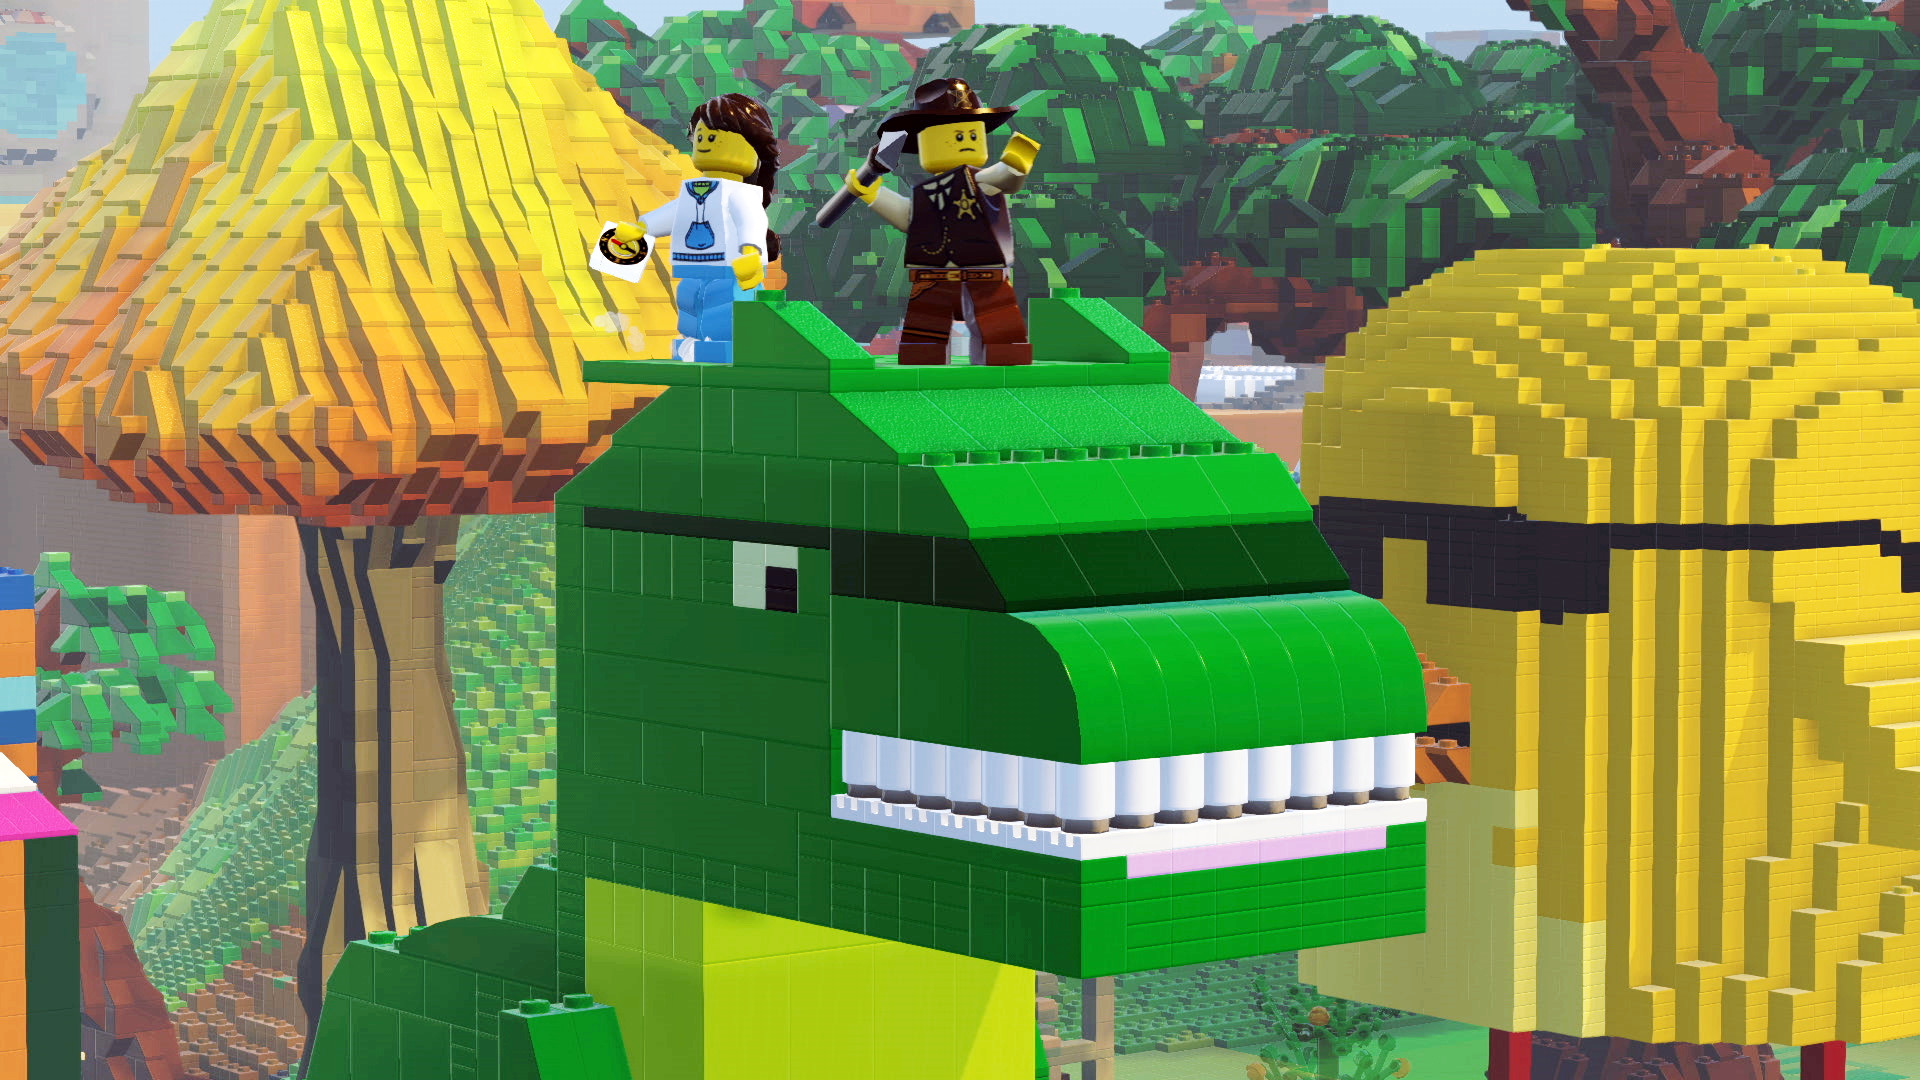 LEGO® Worlds (App 332310) · SteamDB